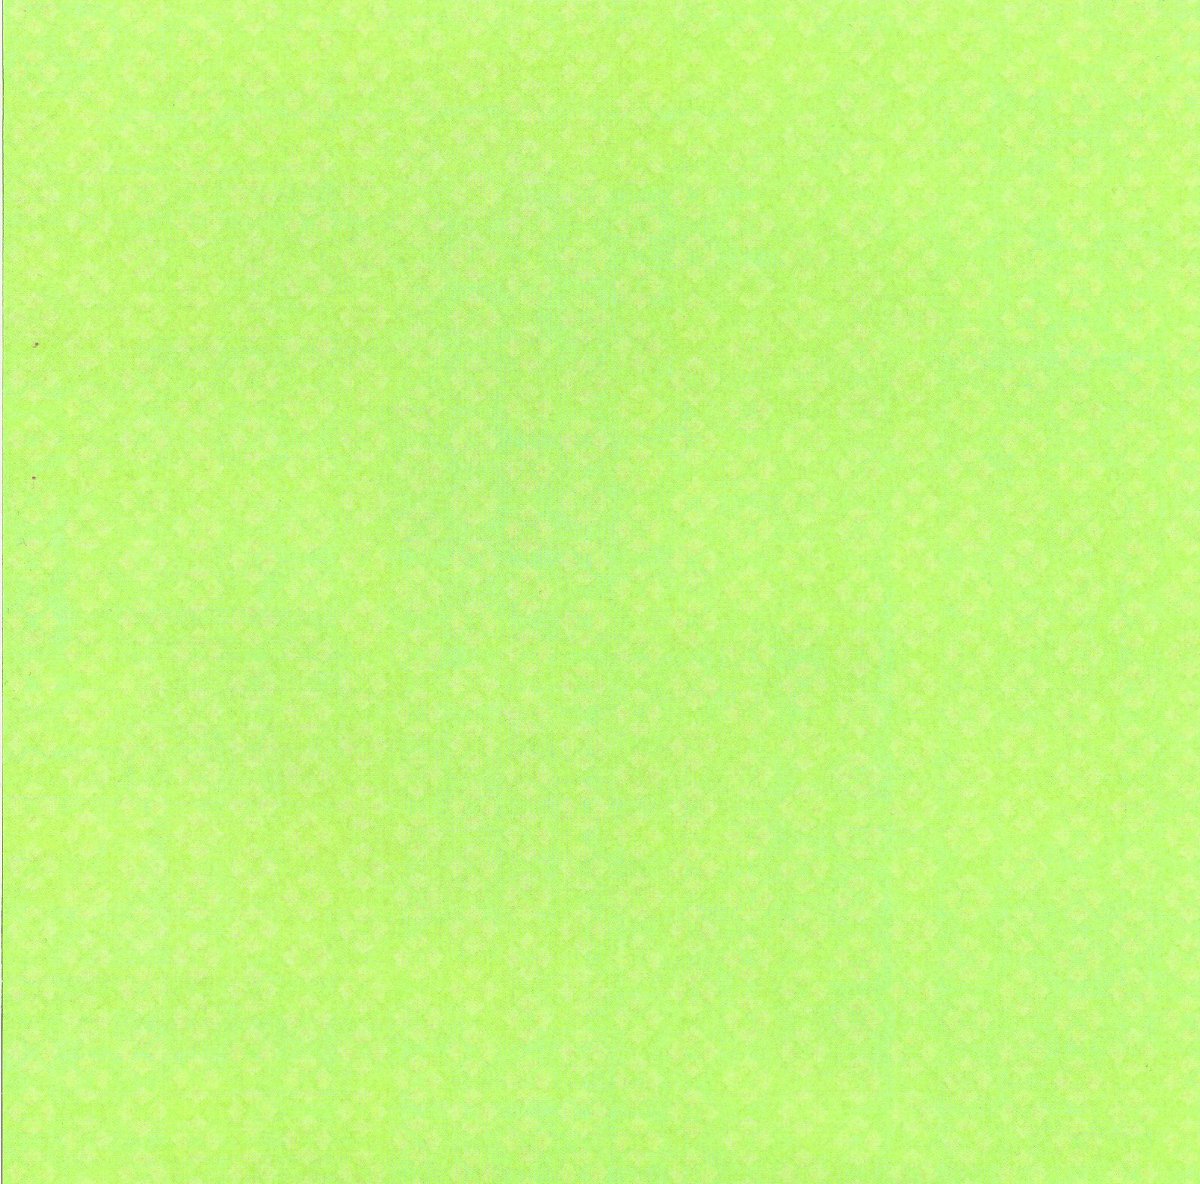 荧光绿色壁纸纯色无字图片